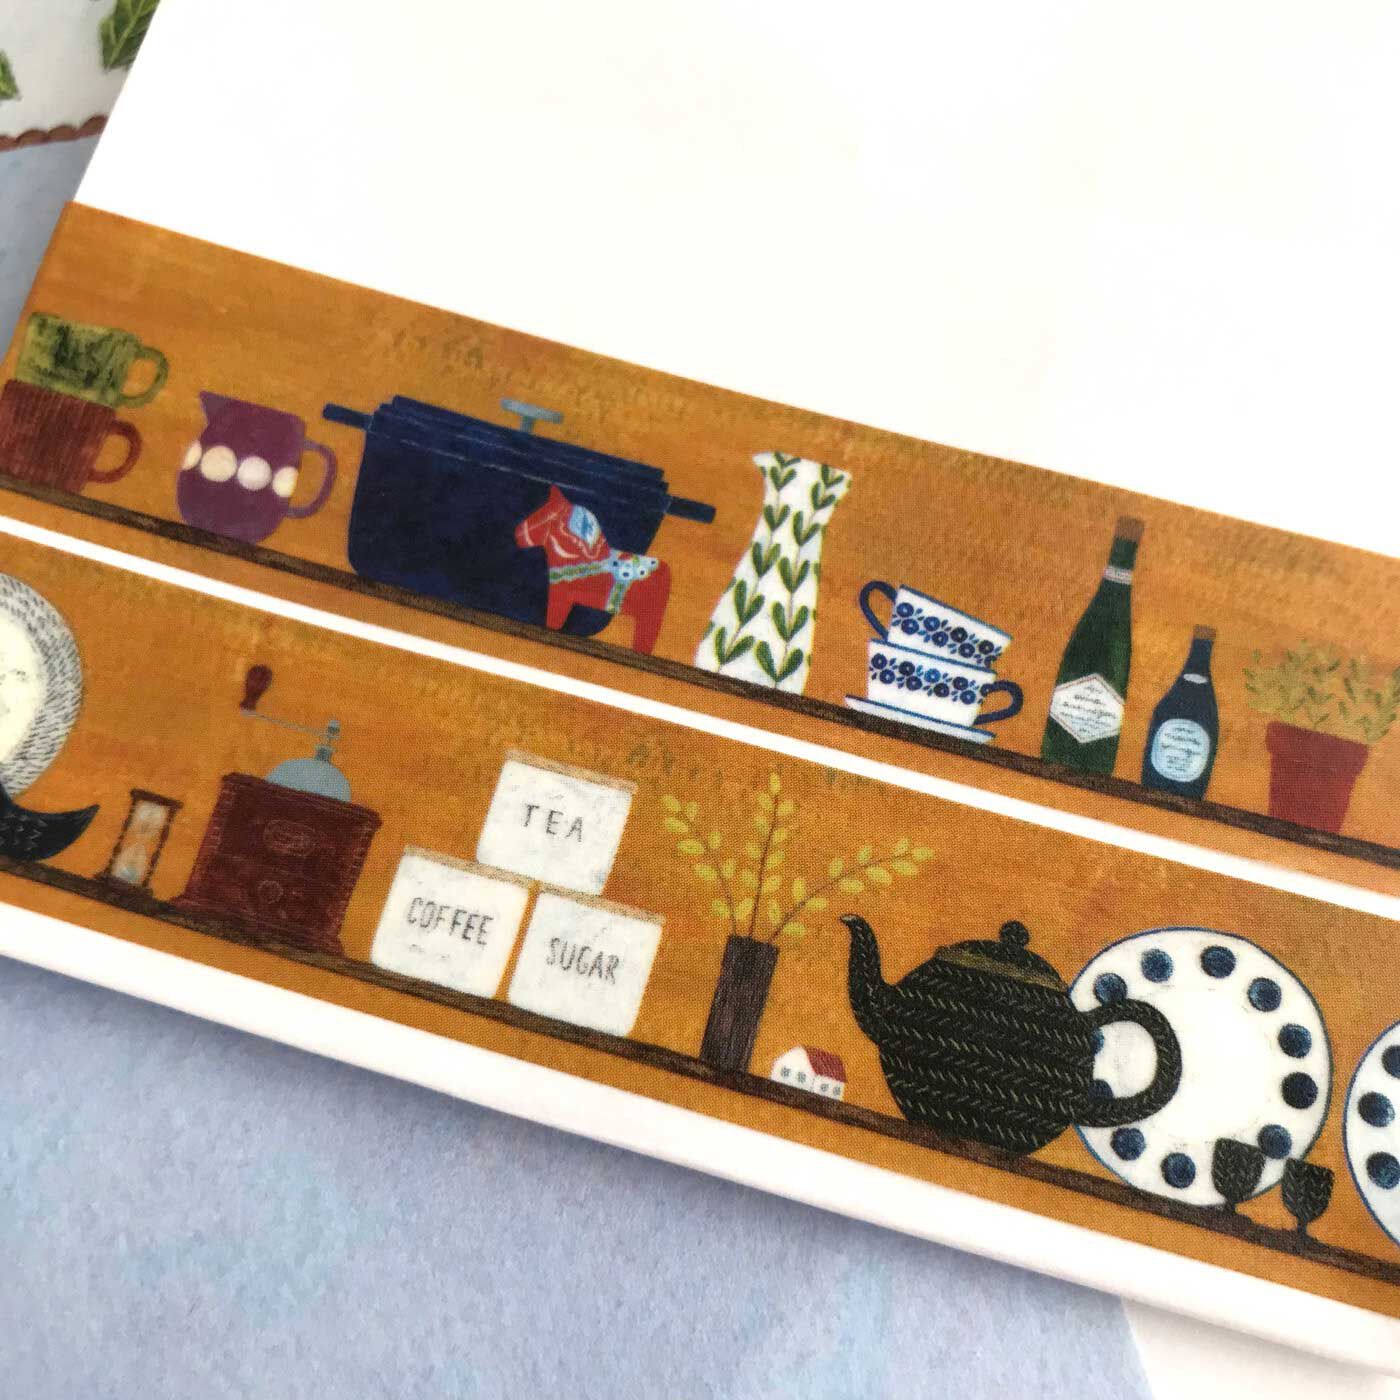 フェリシモの雑貨 Kraso|cozyca products  紙もの文具セット〈浅野みどり〉|キッチンの棚がデザインされたマスキングテープ。ポットやカップ、描かれているひとつひとつのモチーフ、どれも、全部ぜんぶかわいい。